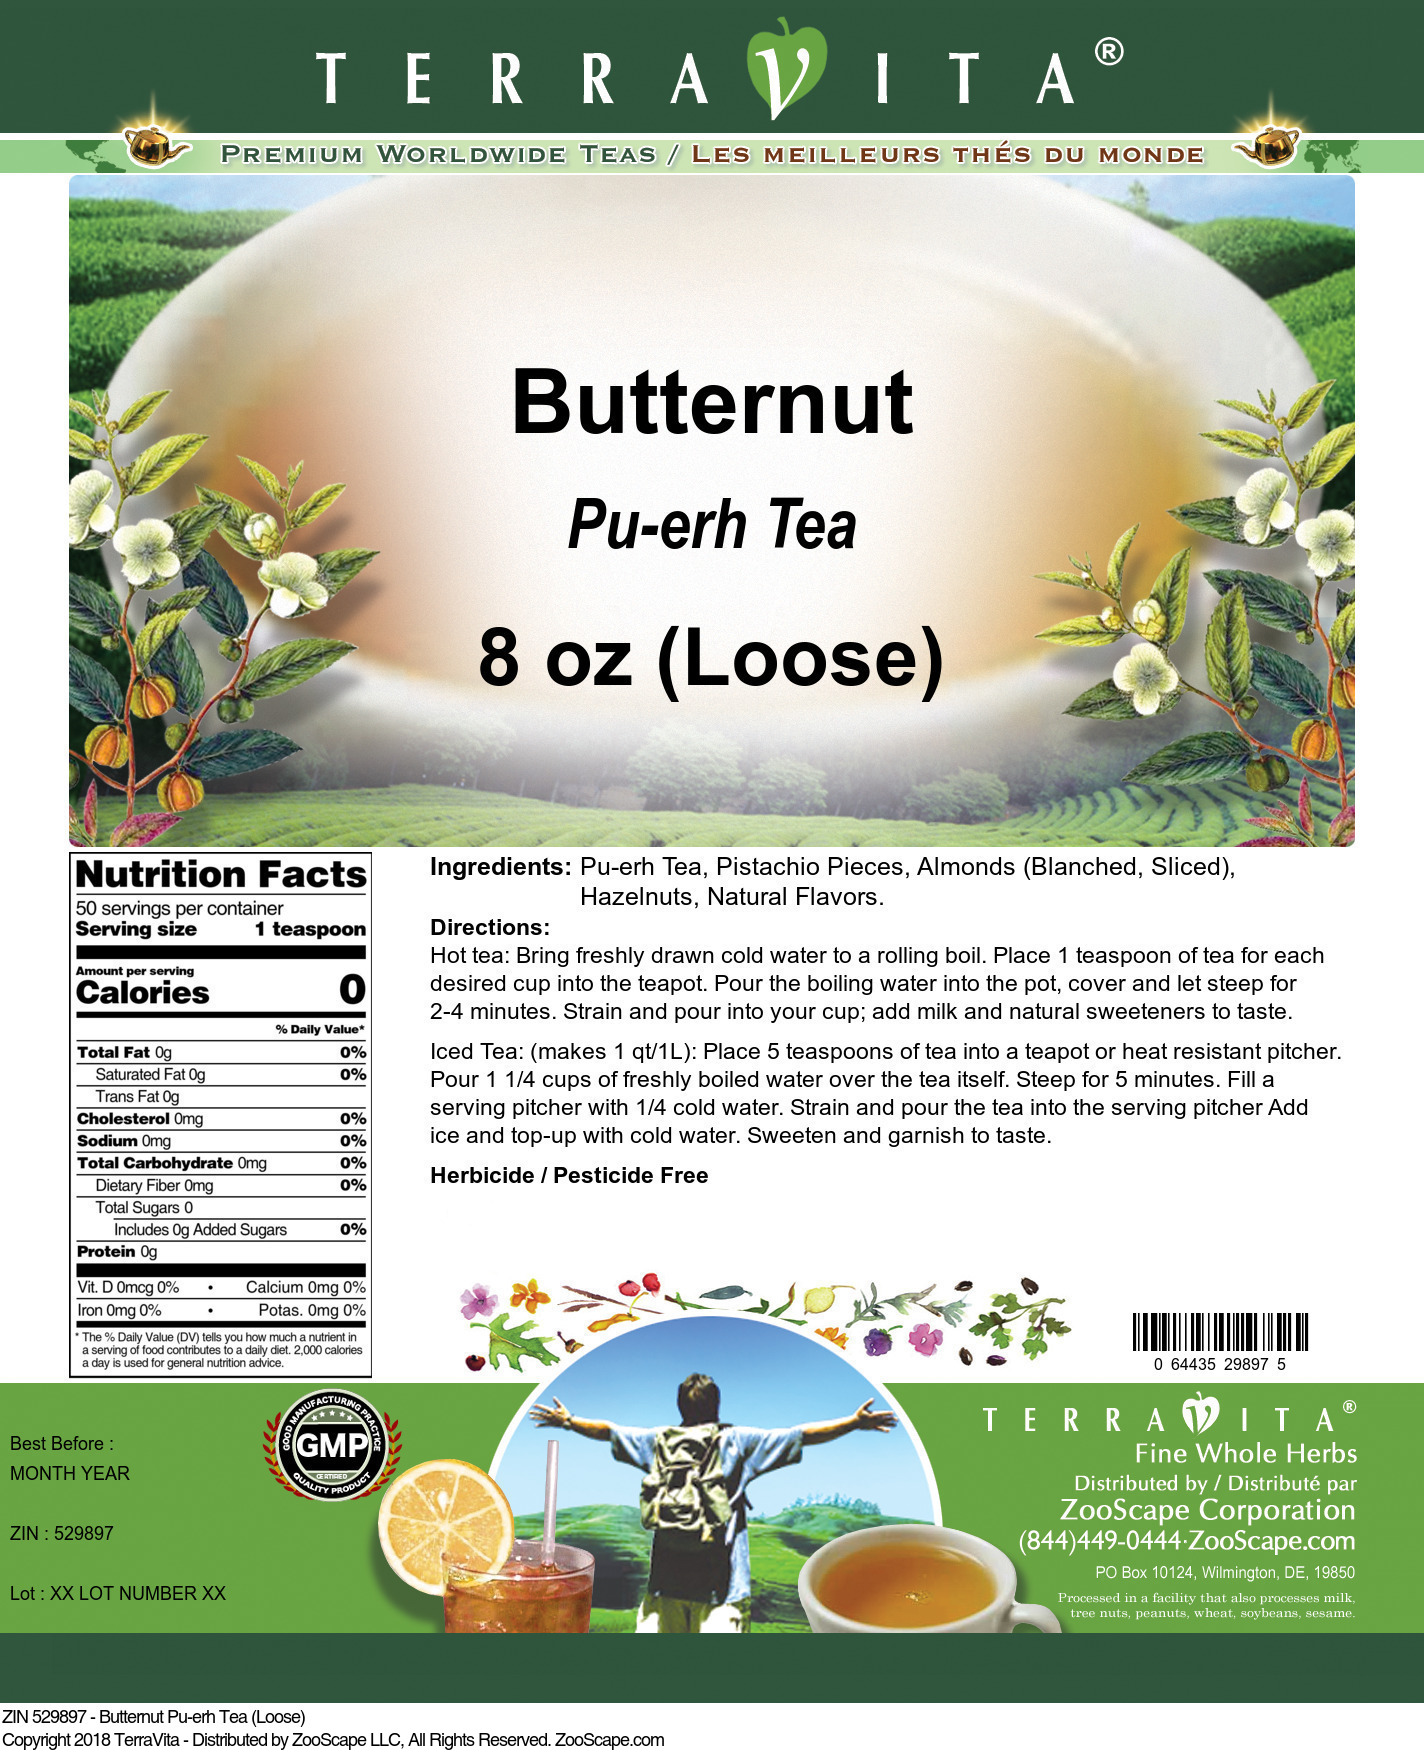 Butternut Pu-erh Tea (Loose) - Label